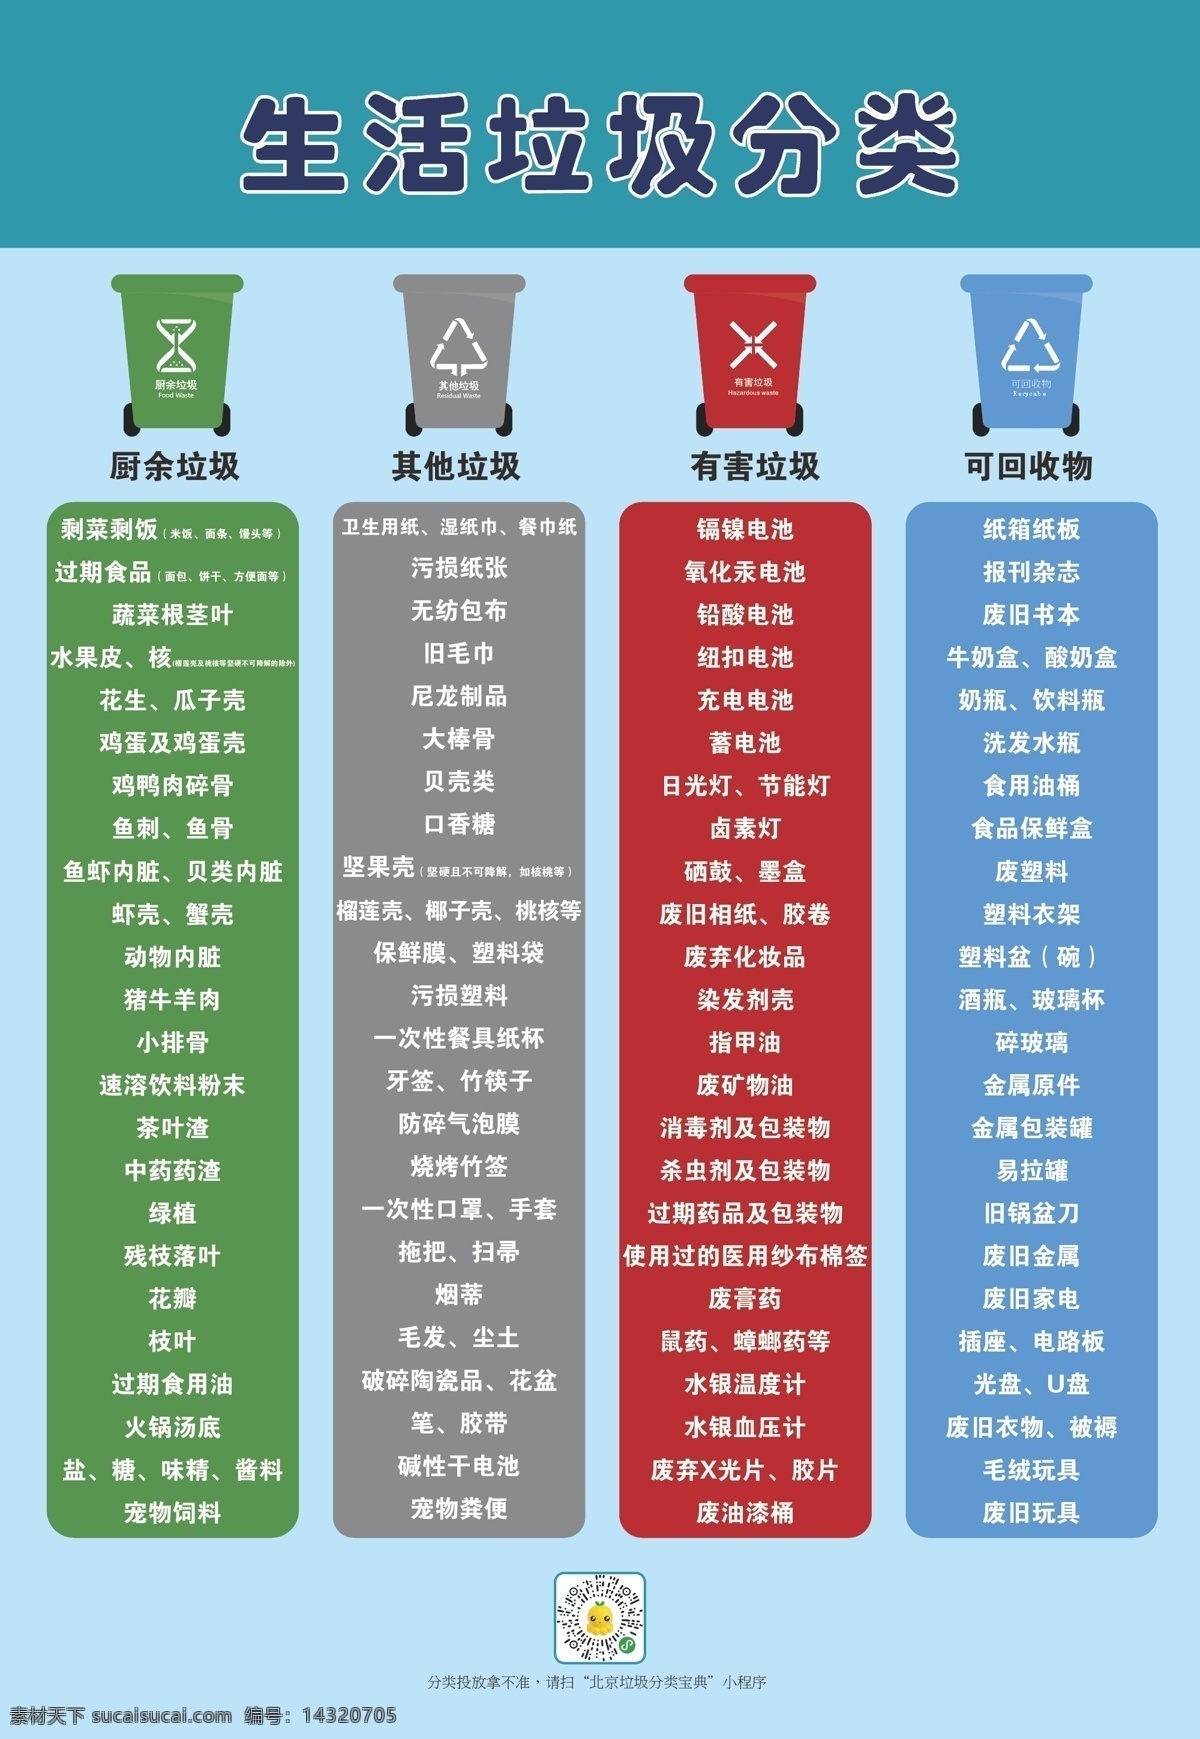 生活垃圾分类 垃圾分类 北京垃圾分类 生活垃圾 垃圾 分类